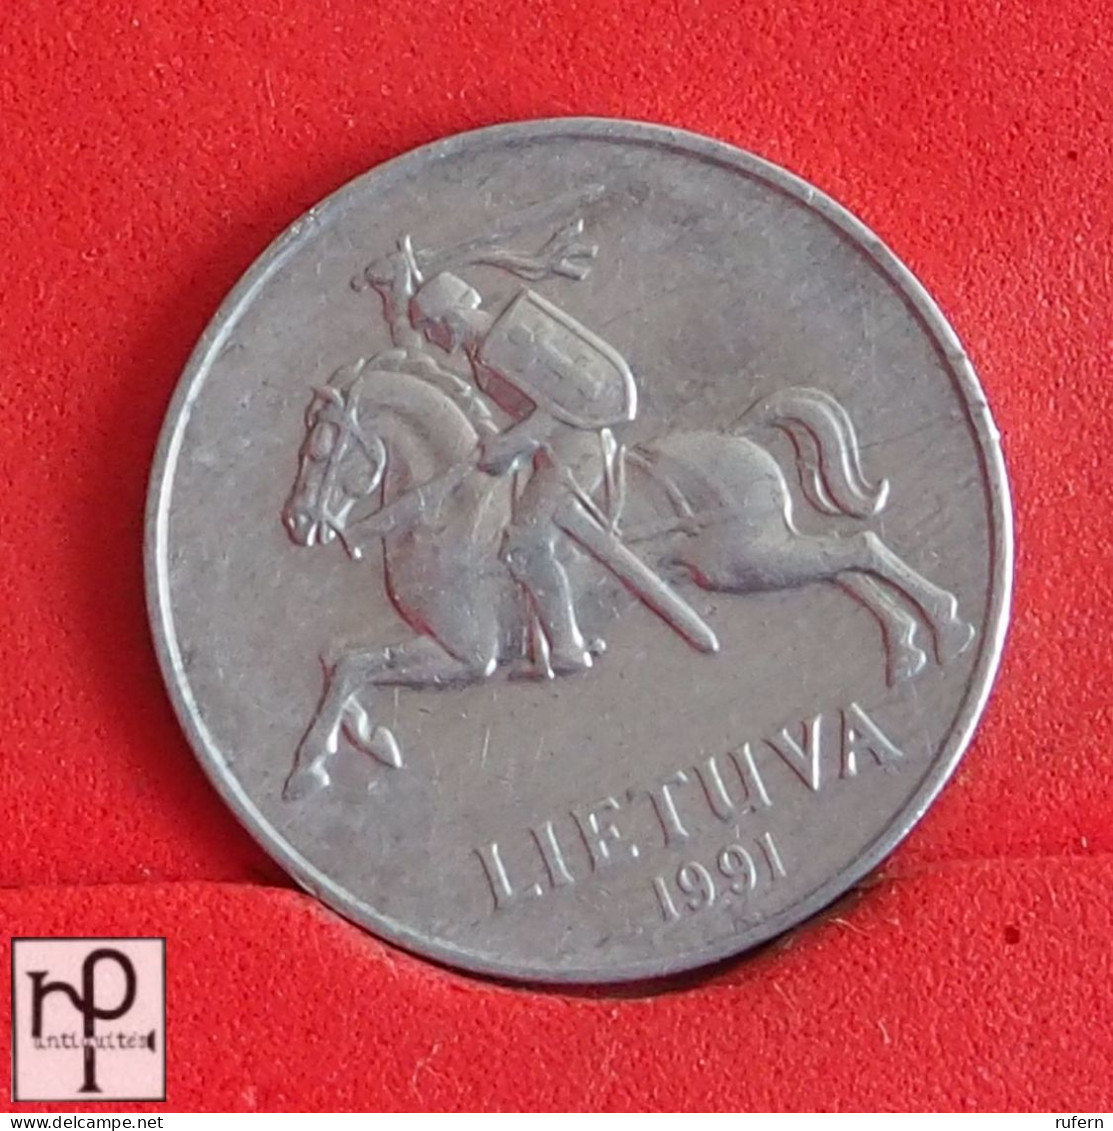 LITHUANIA 5 CENTAI 1991 -    KM# 87 - (Nº55177) - Litouwen